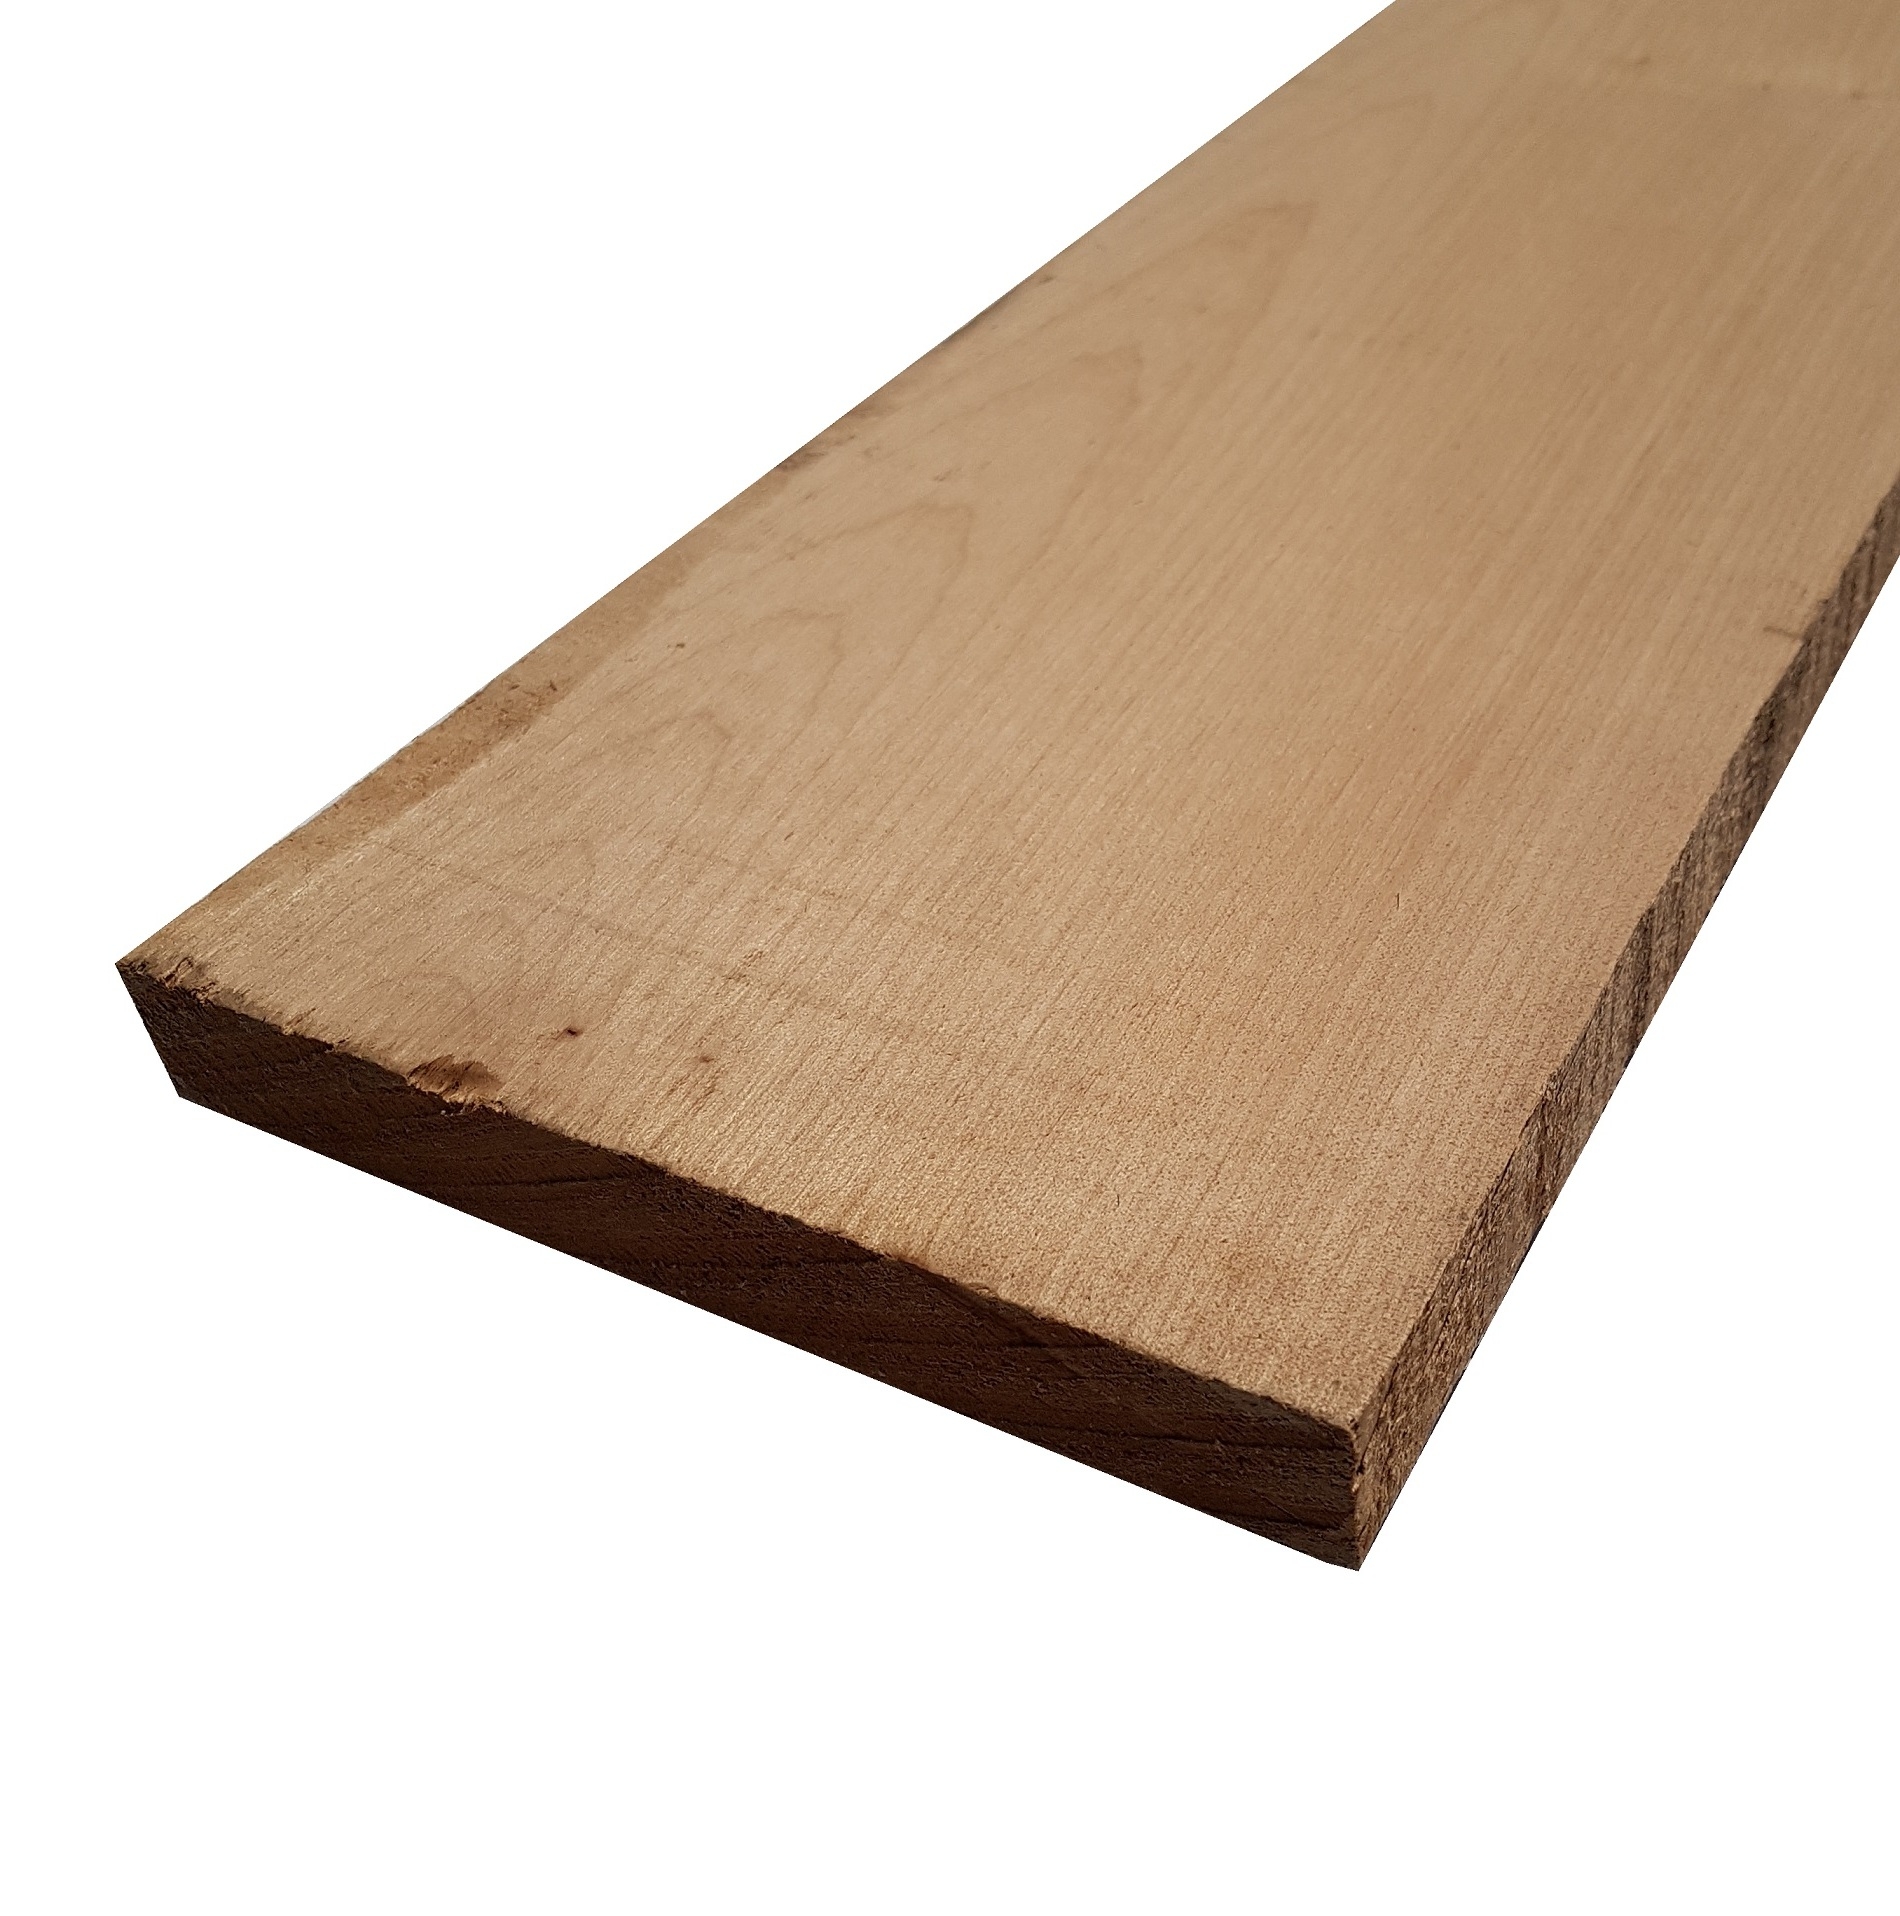 Tavola legno di Acero Pacific Coast Maple Calibrato refilato grezzo mm 38 x 80 x 2700